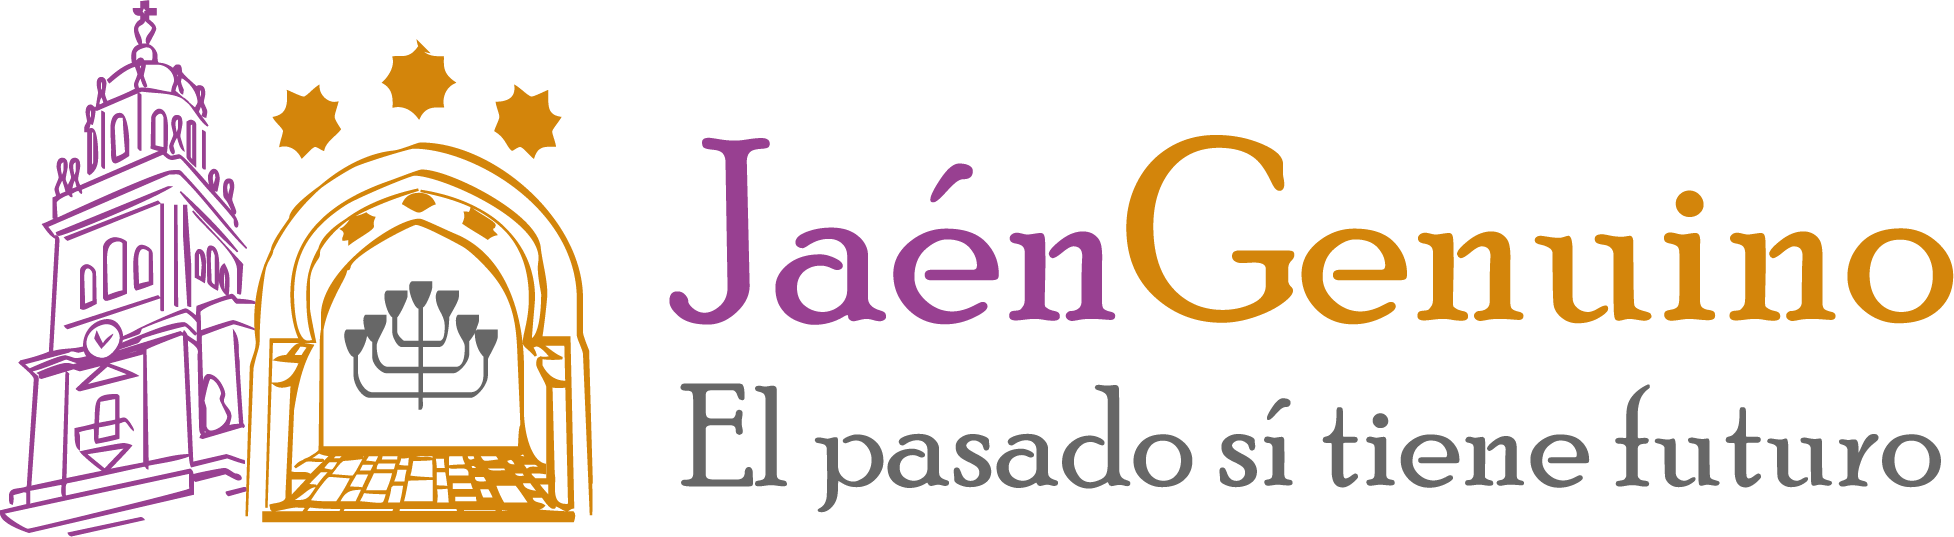 Jaén Genuino